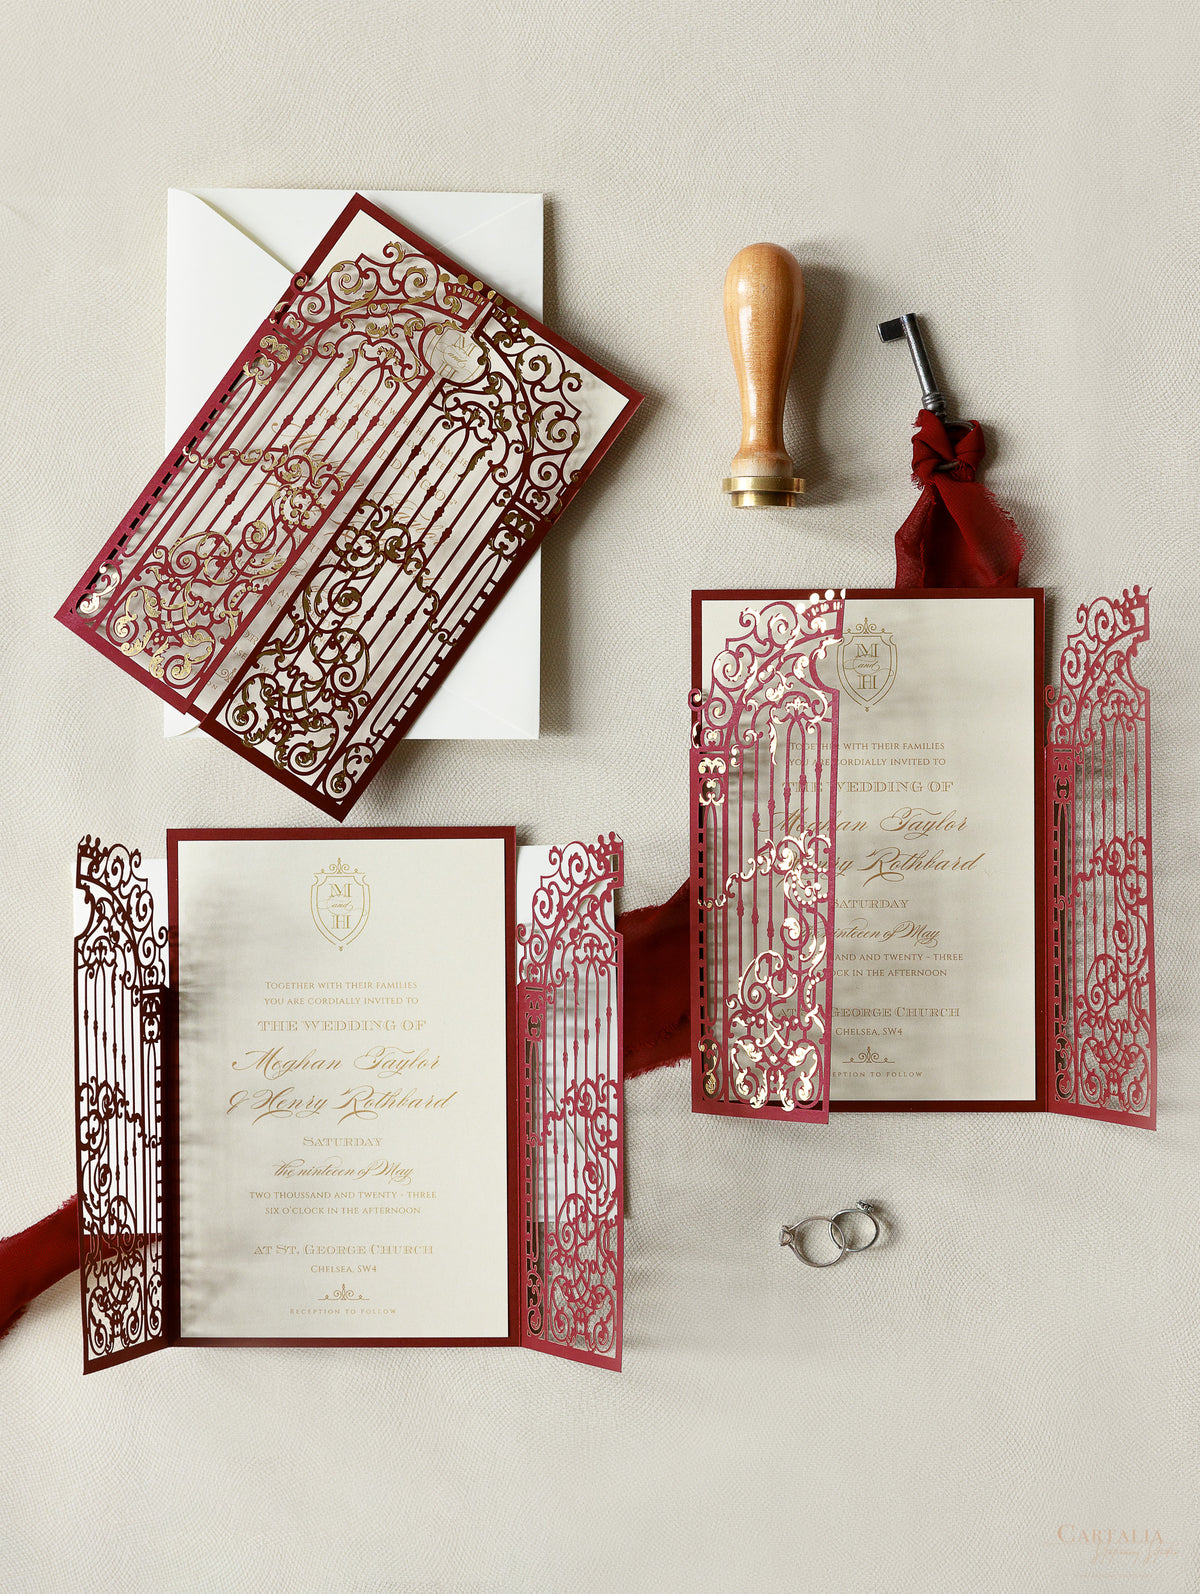 Impresionante invitación para el día de la boda con puerta ornamental de Marsala cortada con láser y lámina dorada